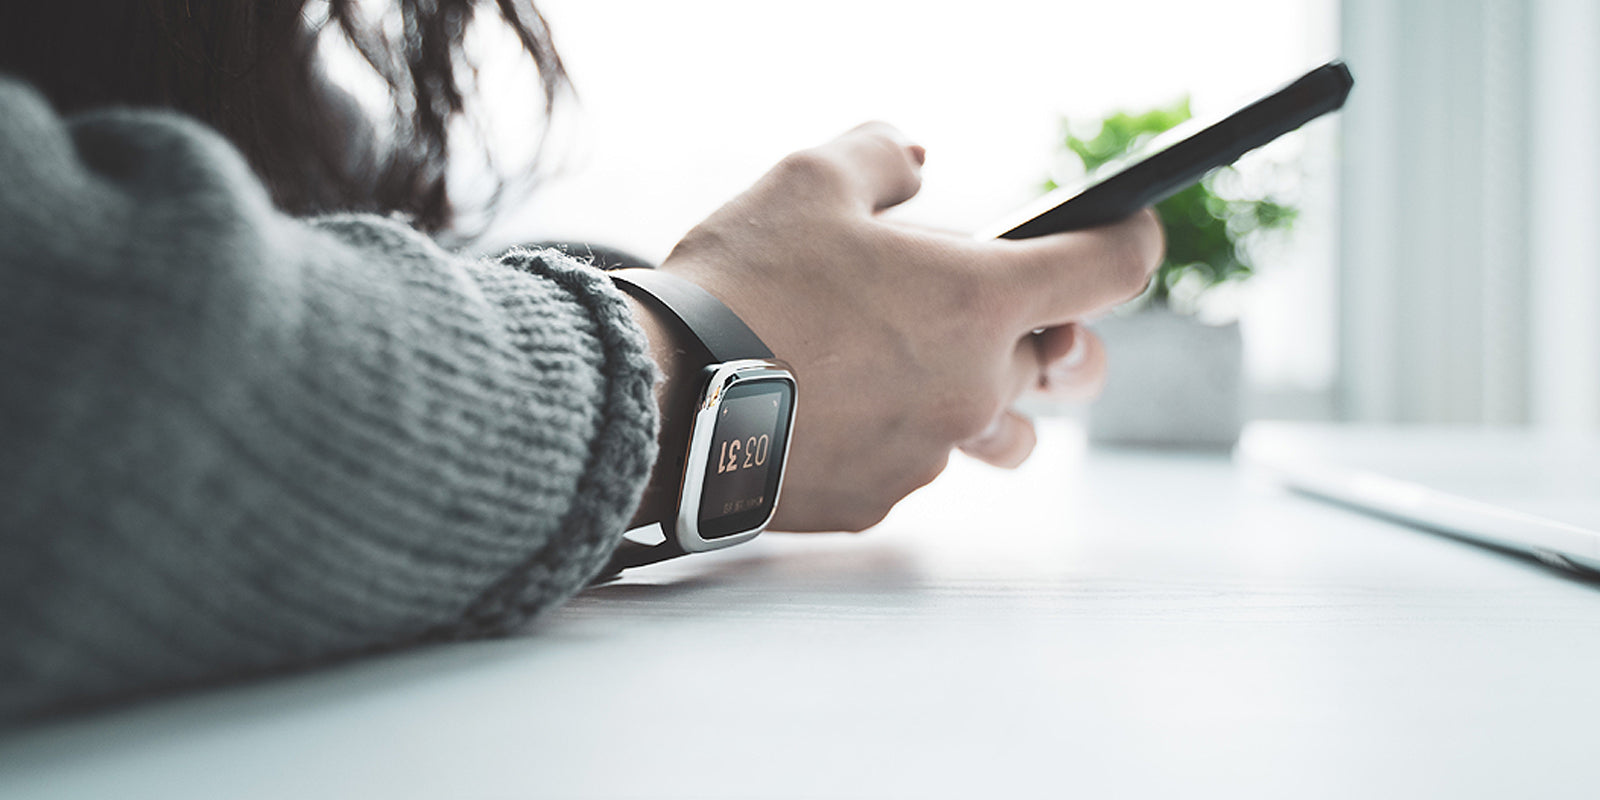 fitbit versa 2 smart watch ringke bezel styling in use image